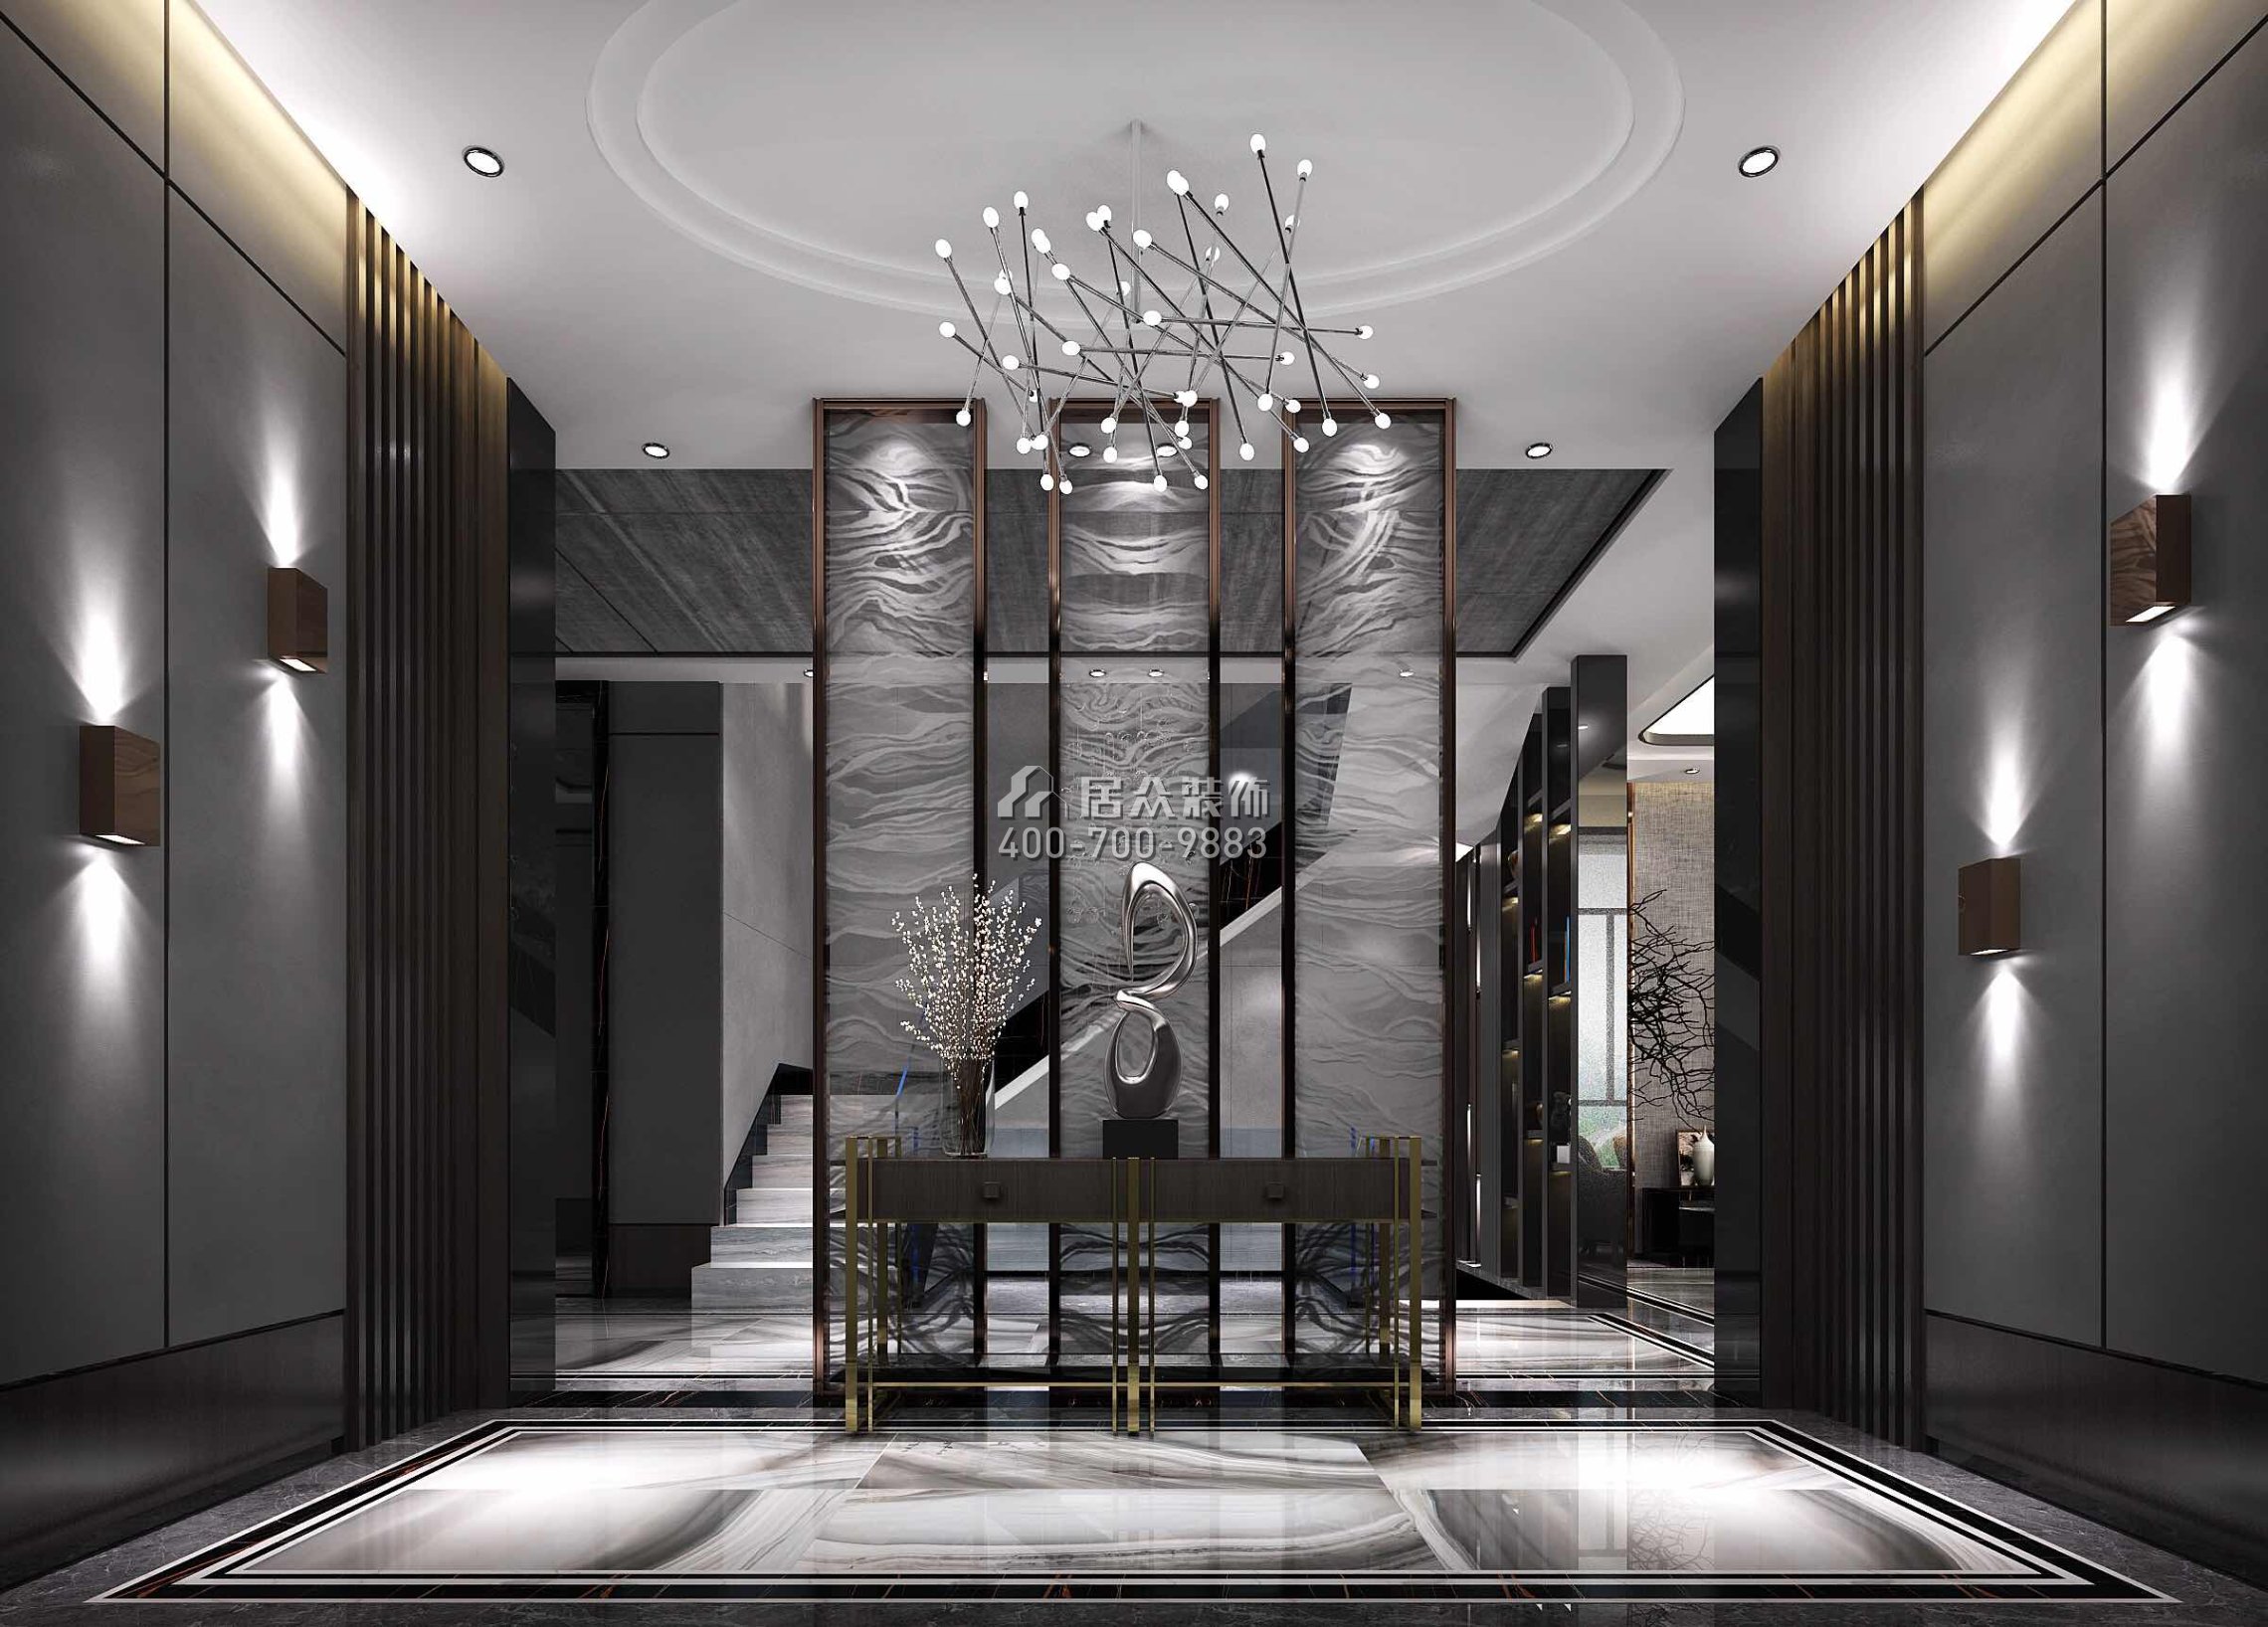 龍光水悅龍灣500平方米現代簡約風格別墅戶型客廳裝修效果圖